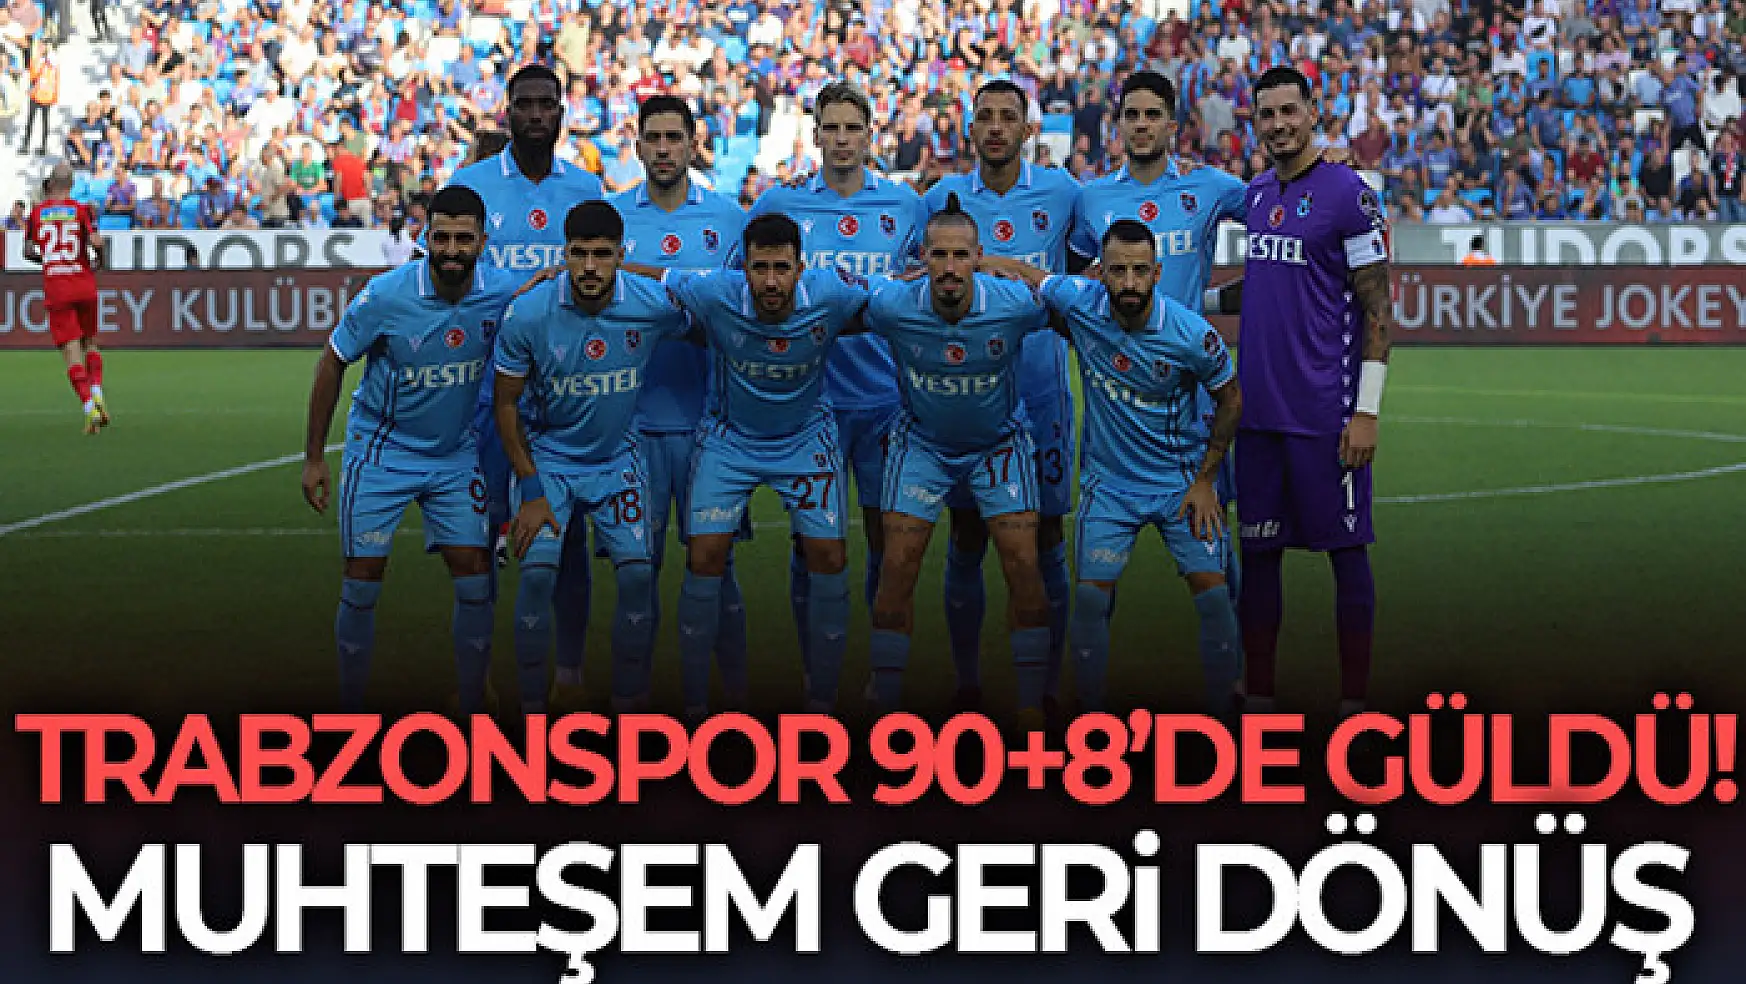 Trabzonspor 90+8'de güldü!